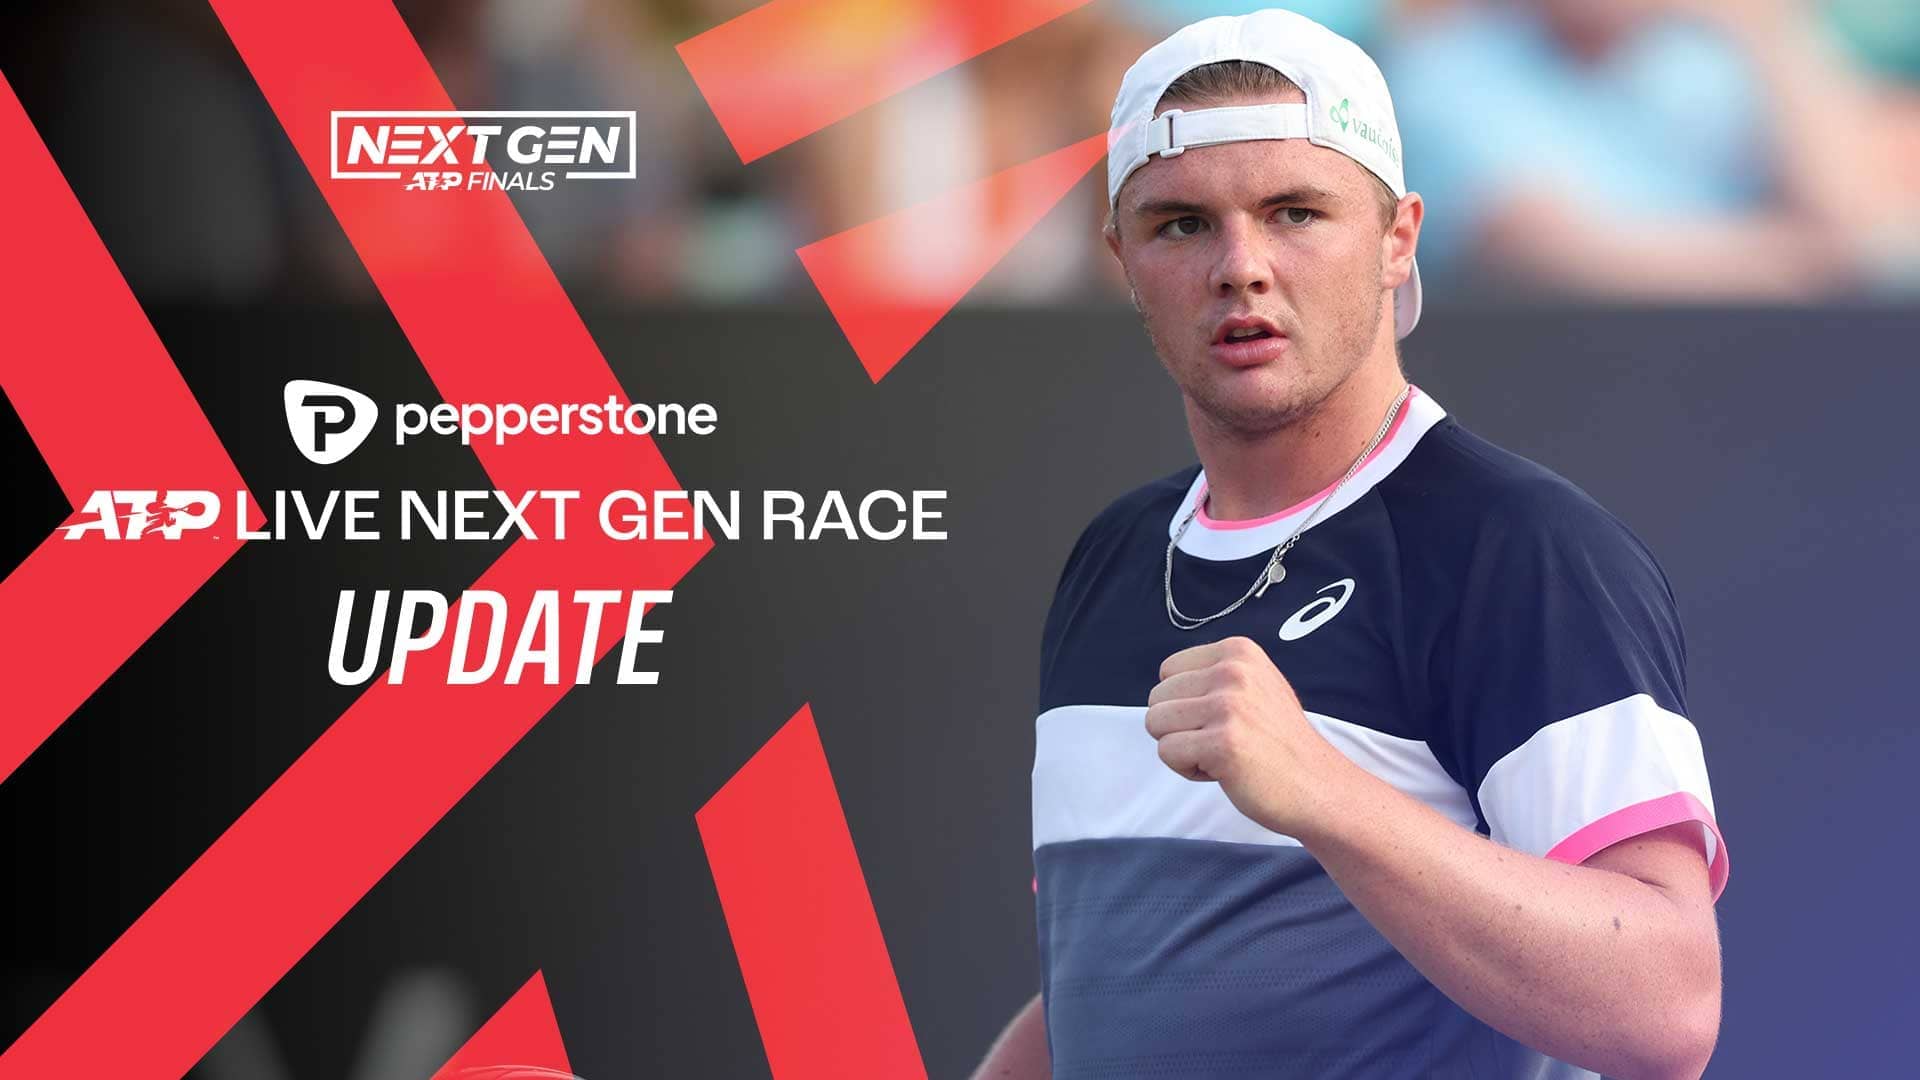 Stricker, Michelsen Rise In Next Gen Race News Article Next Gen ATP Finals Tennis